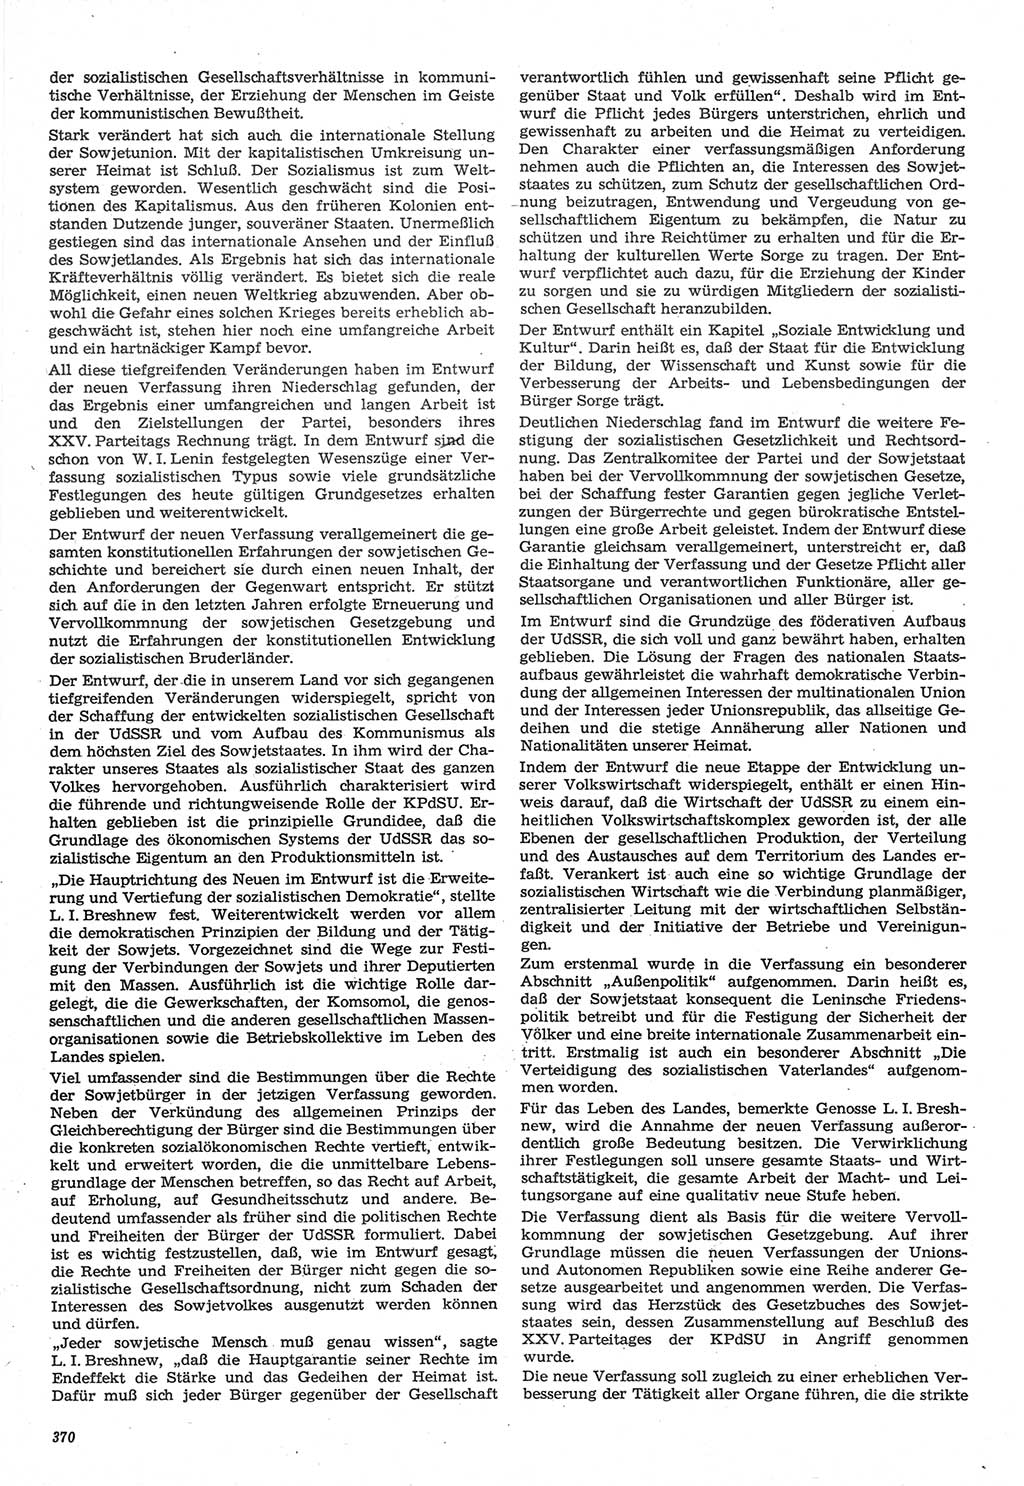 Neue Justiz (NJ), Zeitschrift für Recht und Rechtswissenschaft-Zeitschrift, sozialistisches Recht und Gesetzlichkeit, 31. Jahrgang 1977, Seite 370 (NJ DDR 1977, S. 370)